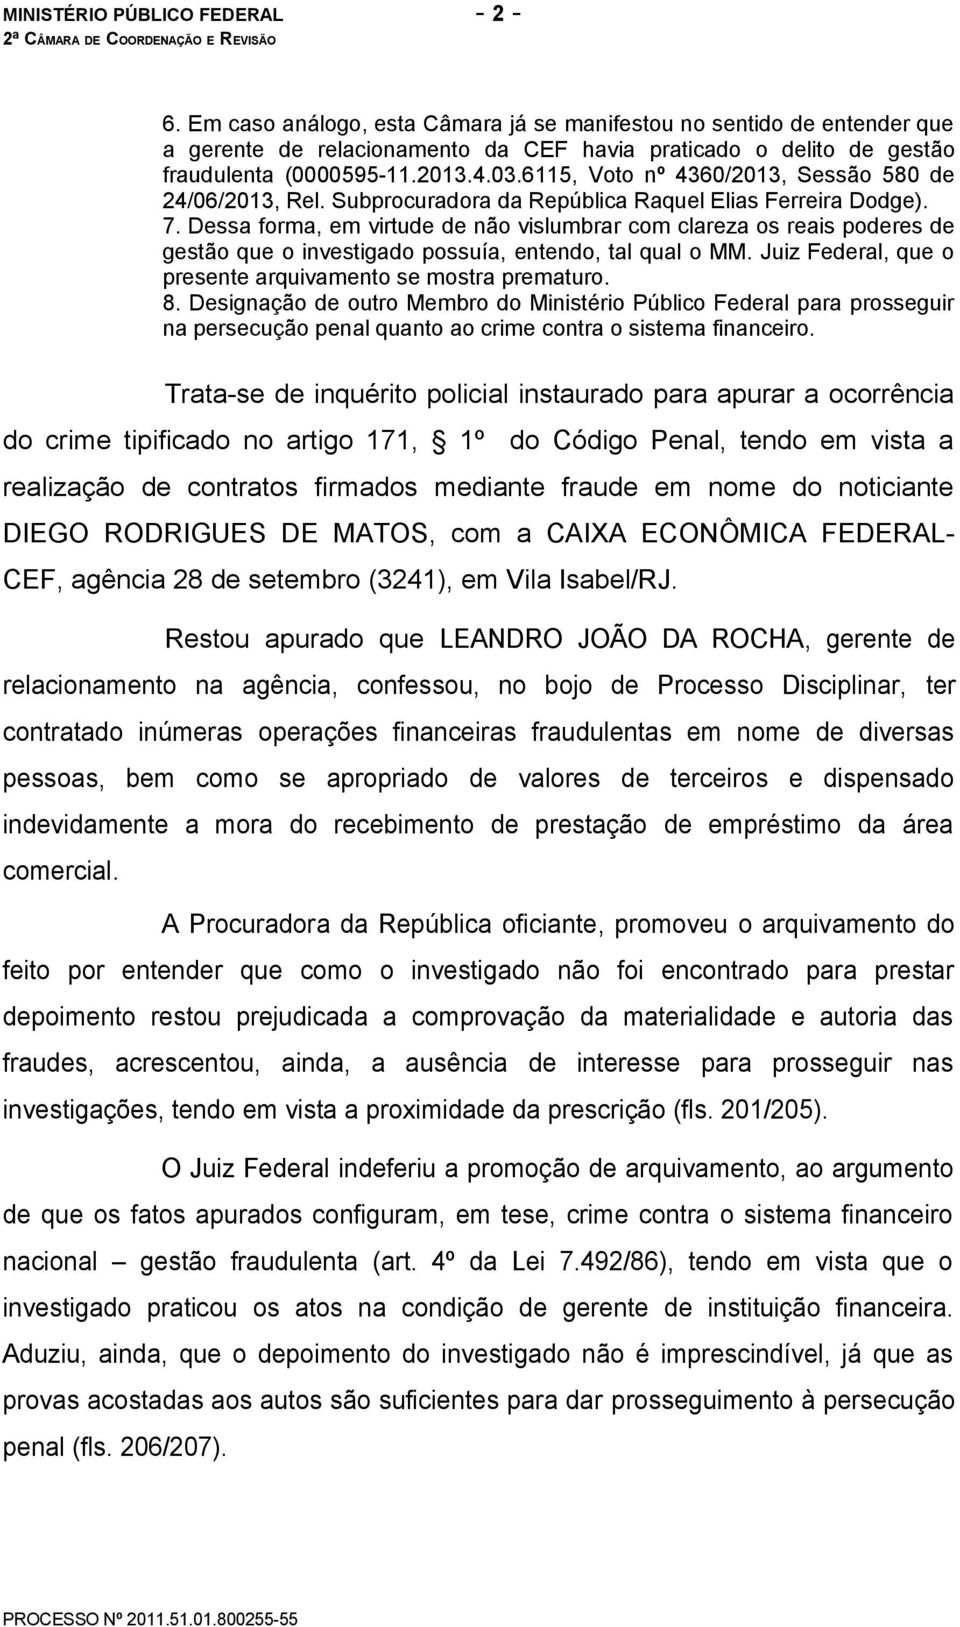 6115, Voto nº 4360/2013, Sessão 580 de 24/06/2013, Rel. Subprocuradora da República Raquel Elias Ferreira Dodge). 7.